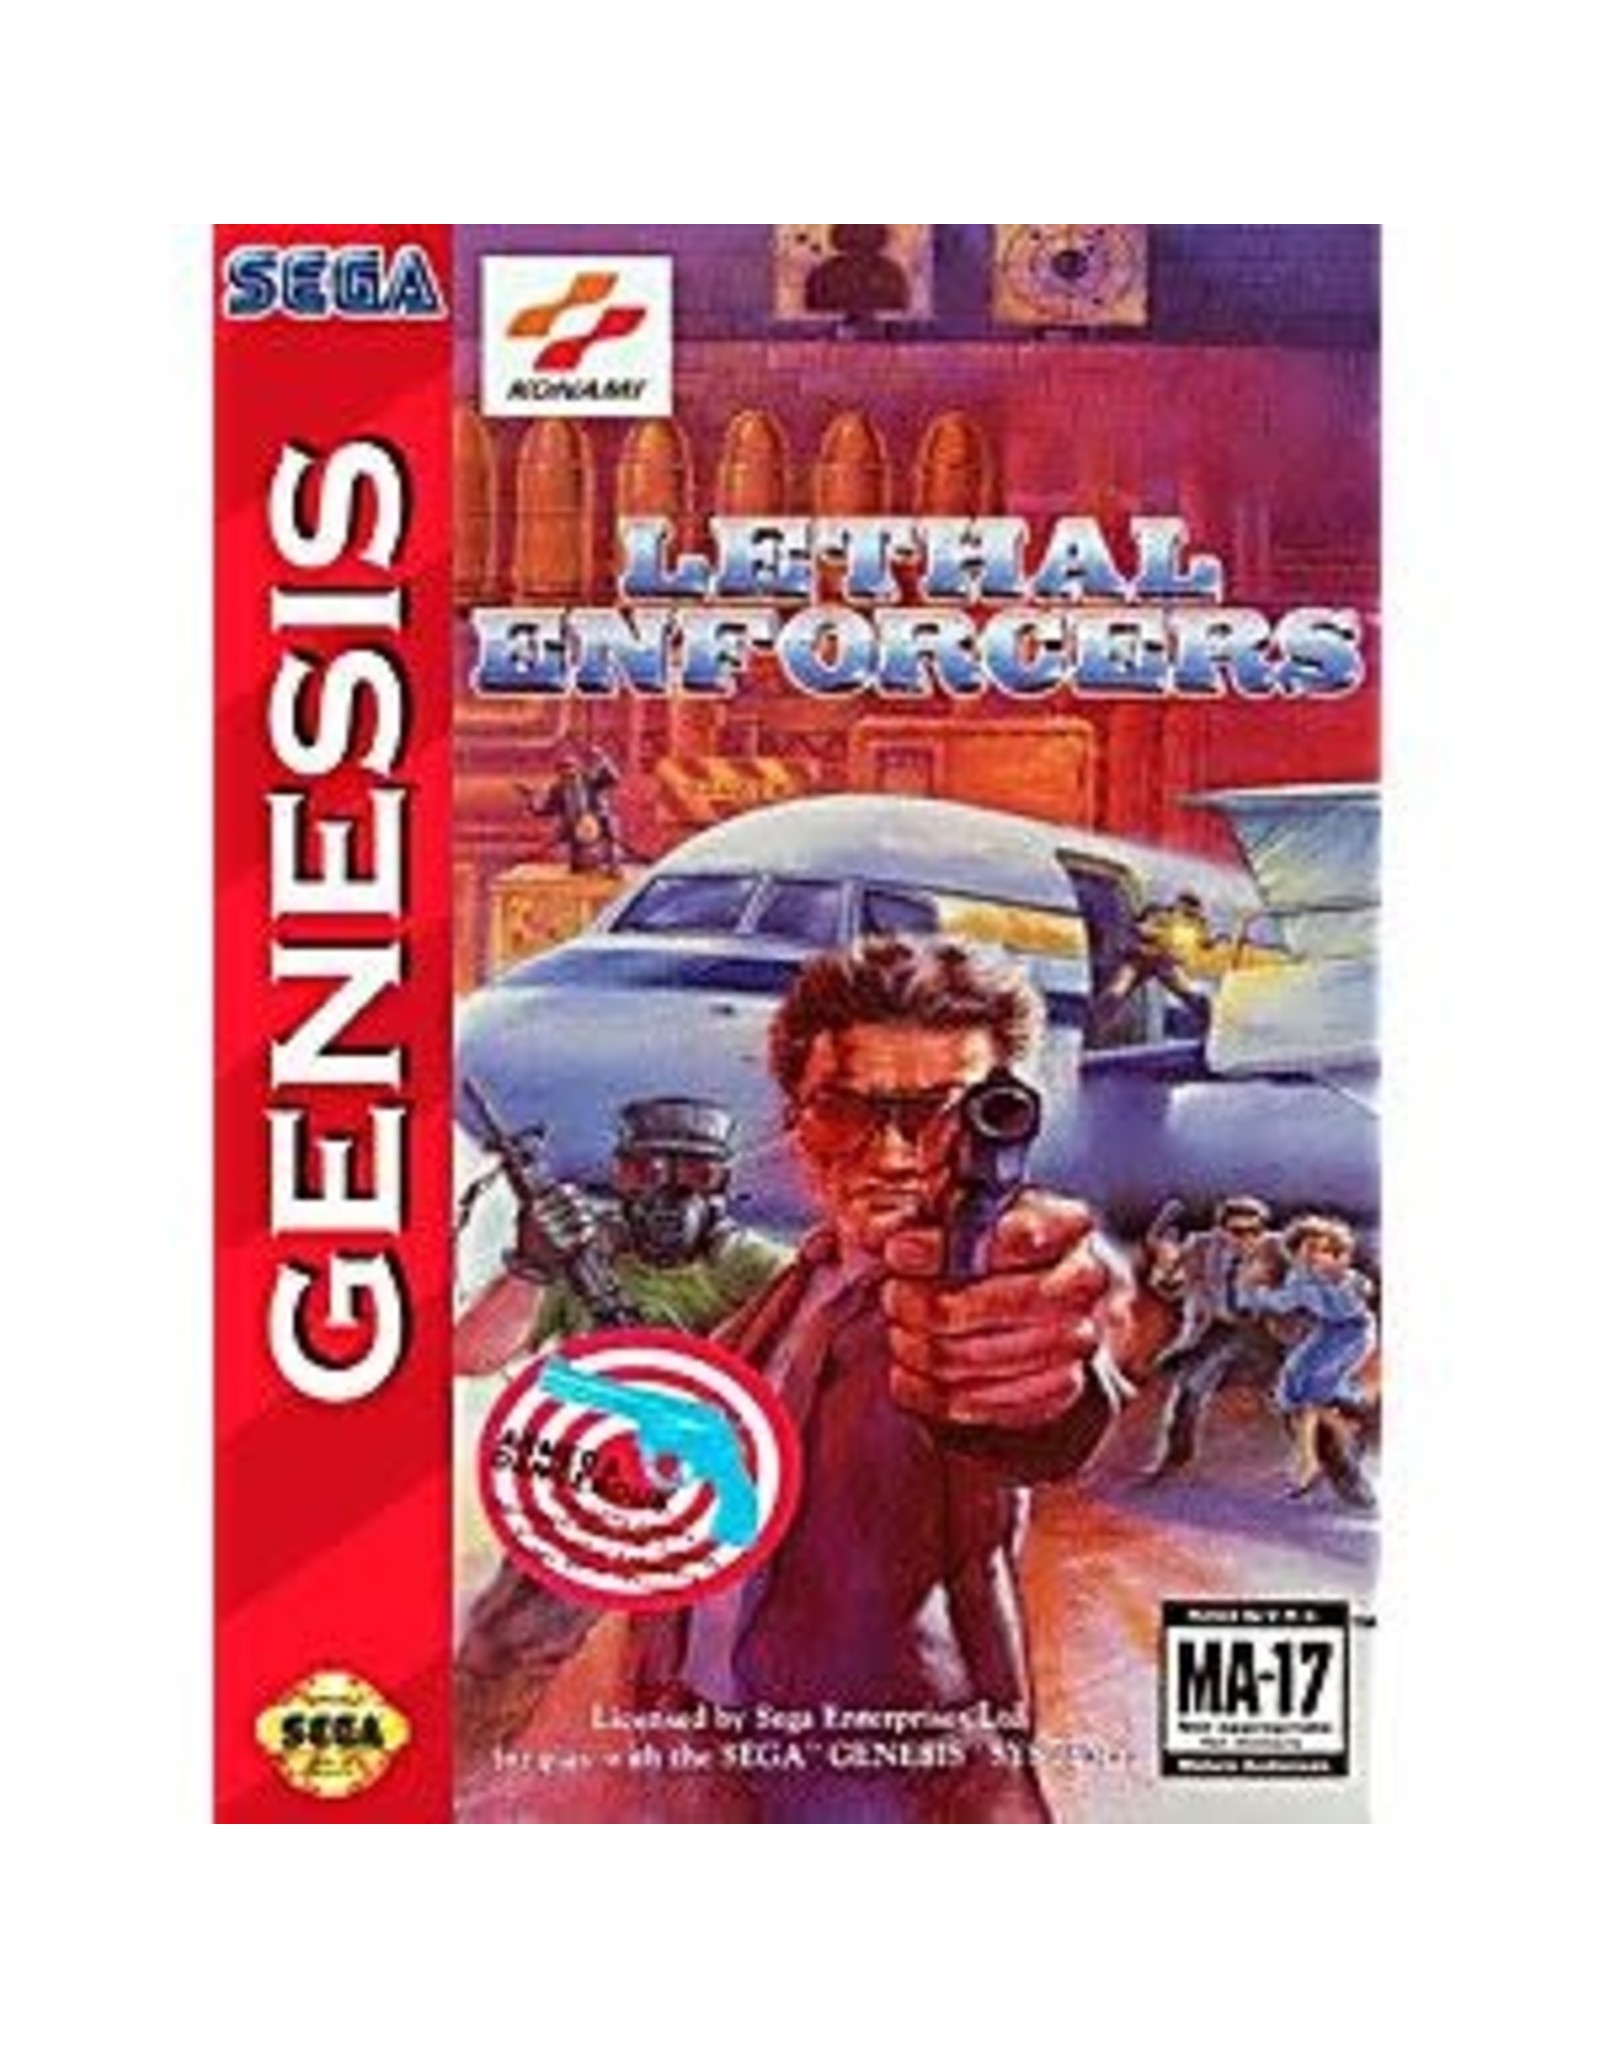 Sega Genesis Lethal Enforcers (Cart Only, Damaged Label)